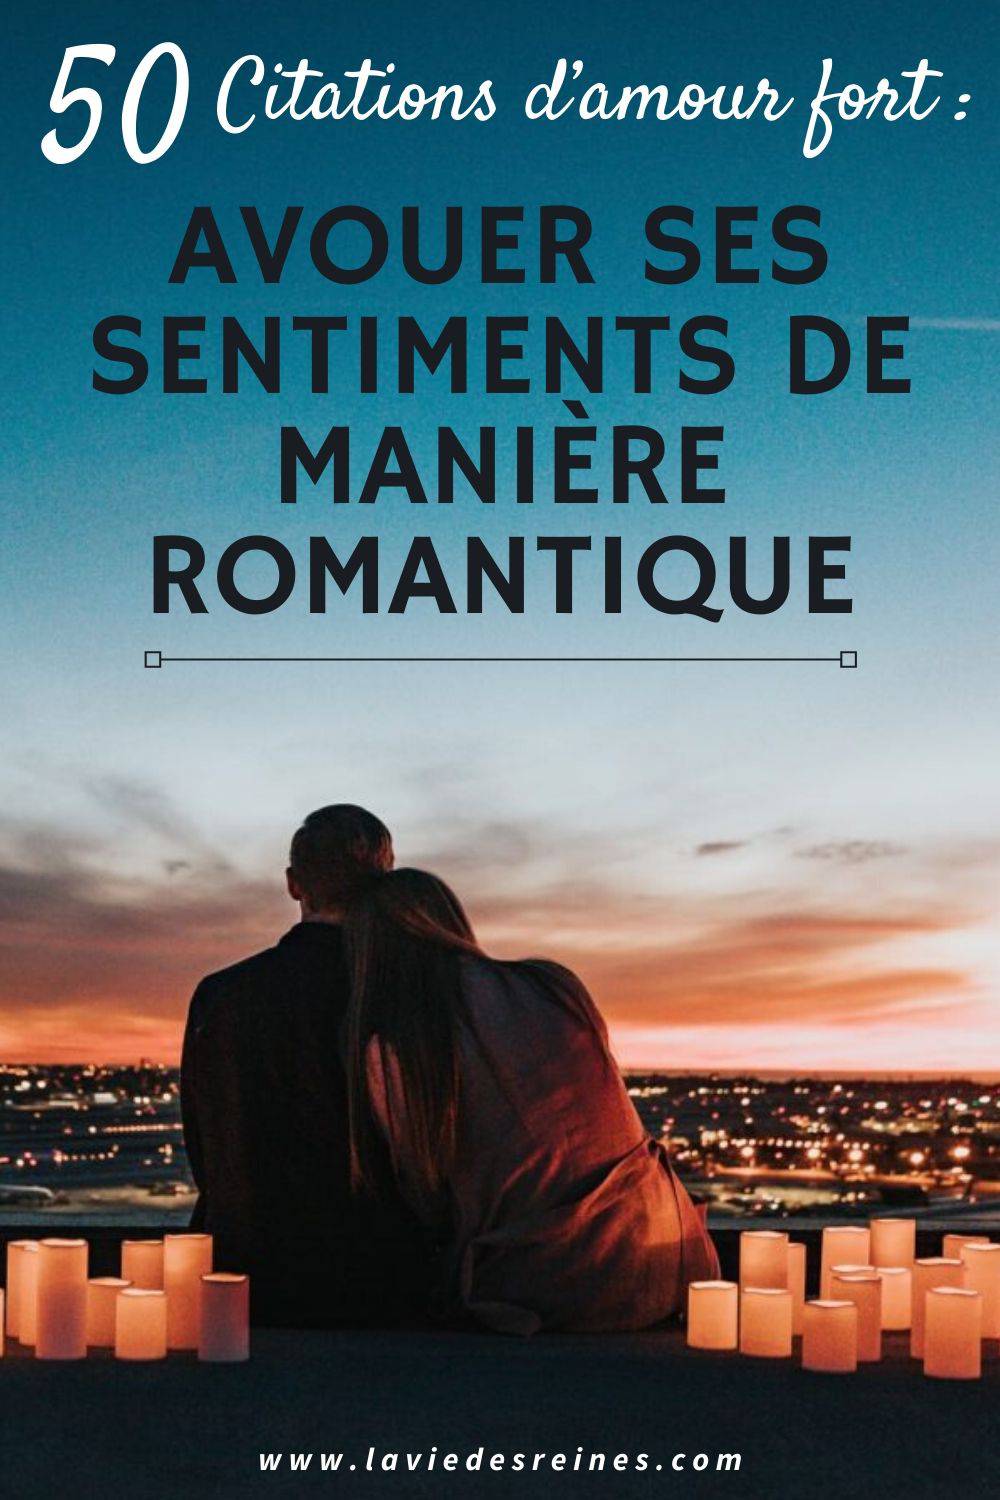 50 Citations D Amour Fort Avouer Ses Sentiments De Maniere Romantique